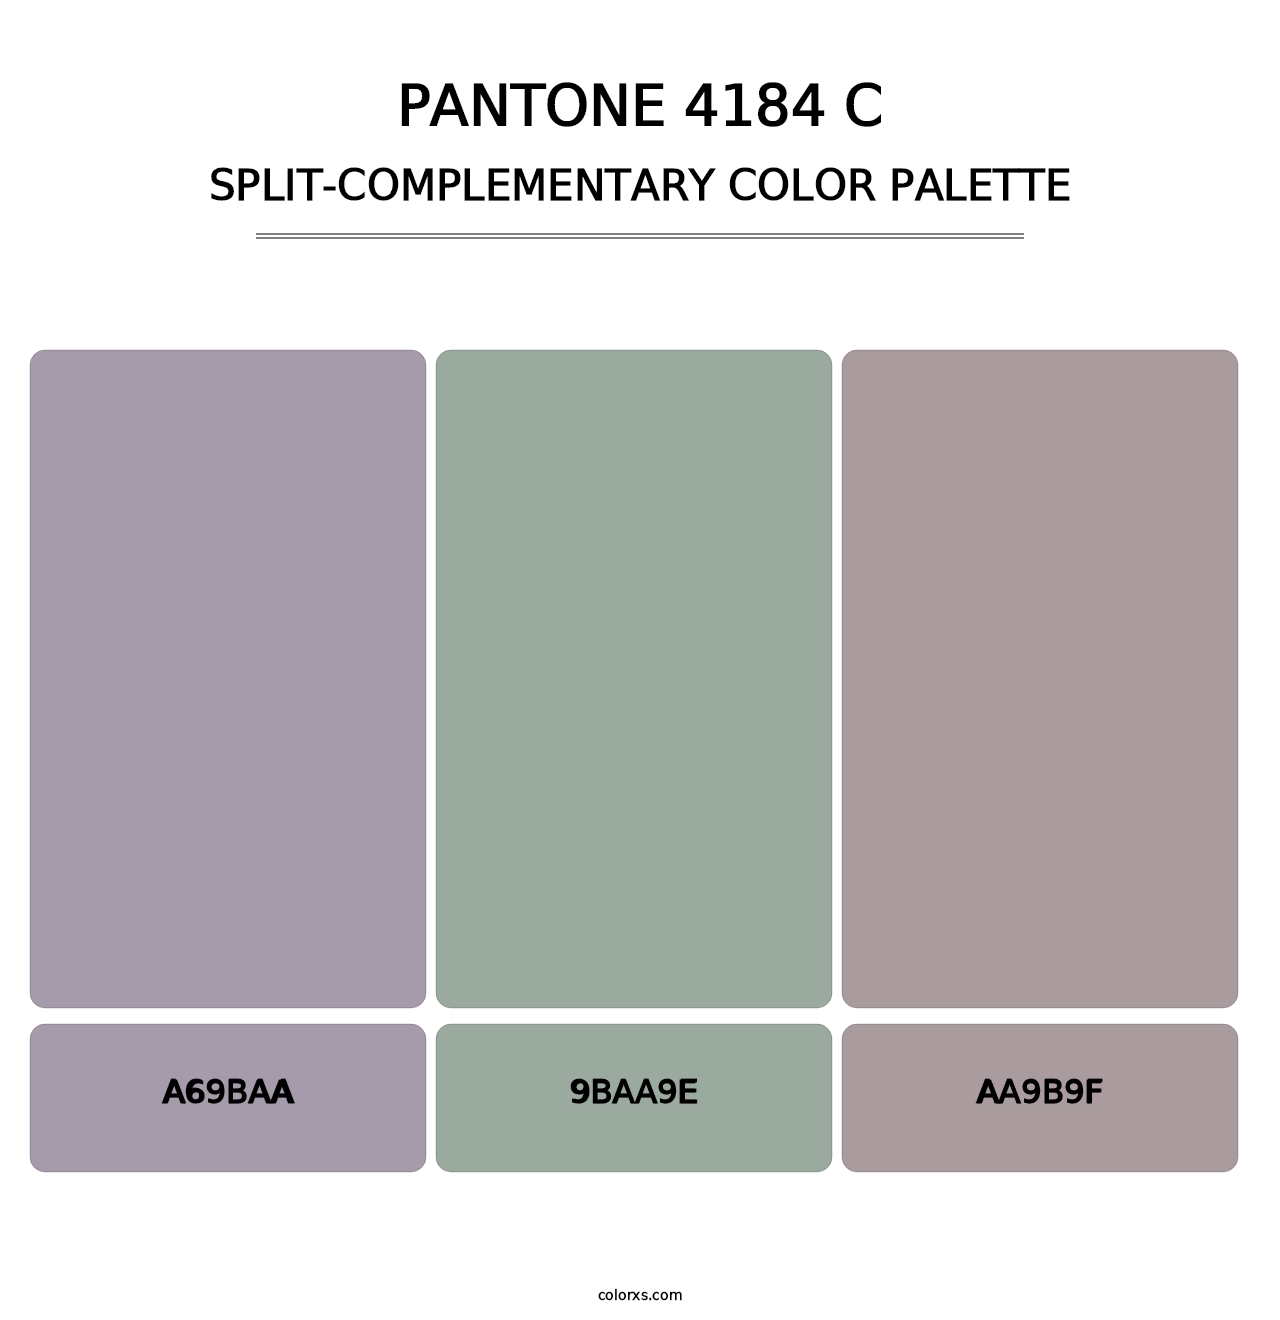 PANTONE 4184 C - Split-Complementary Color Palette